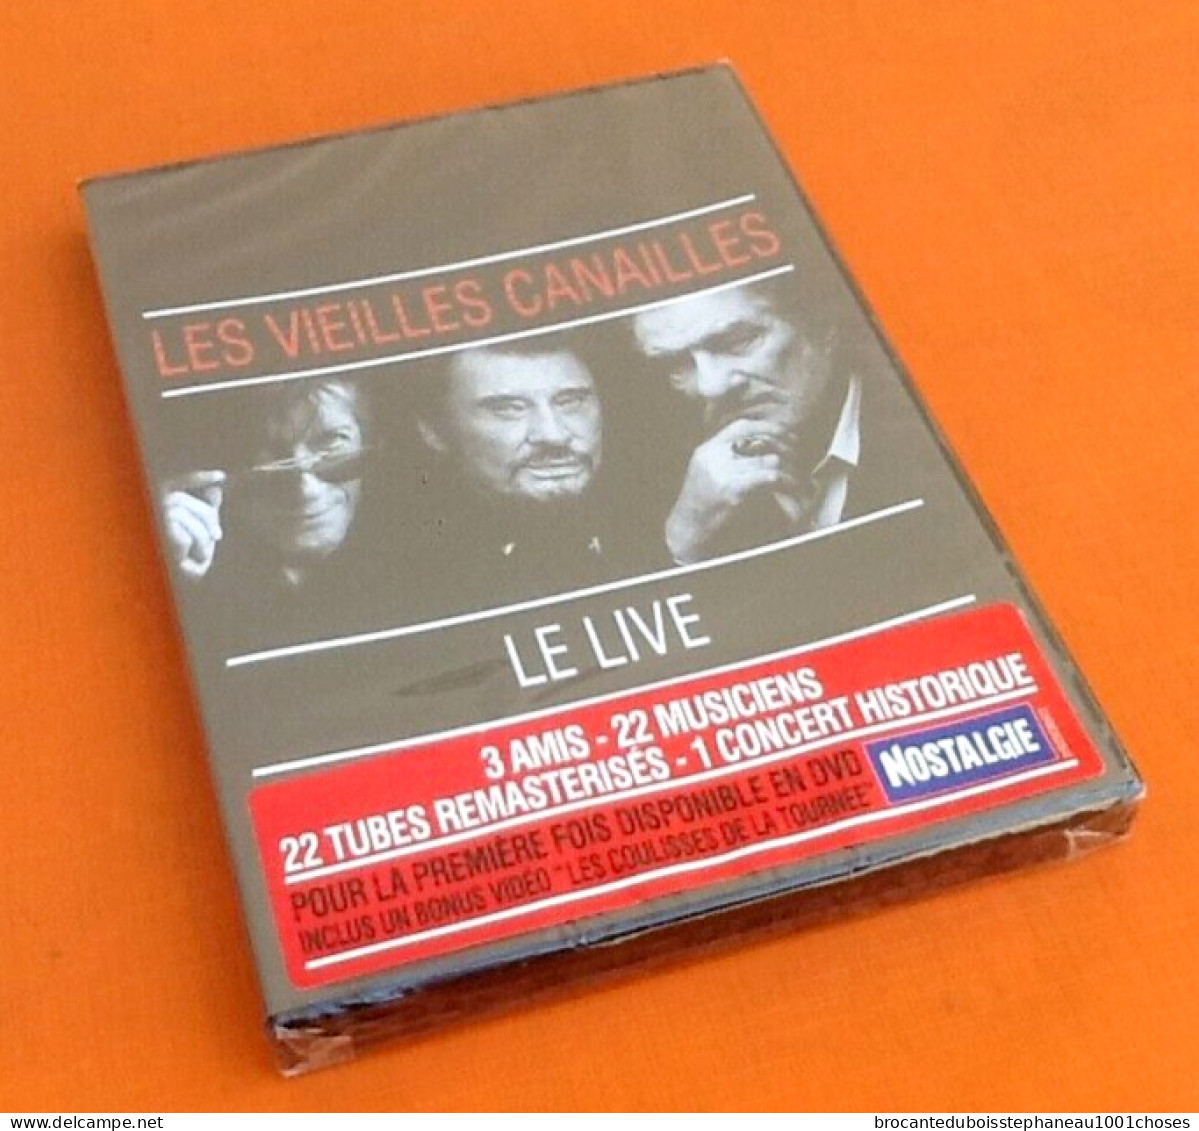 DVD  Les Vieilles Canailles Johnny Hallyday, Eddy Mitchell, Jacques Dutronc,  Le Live 2017 - Musik-DVD's